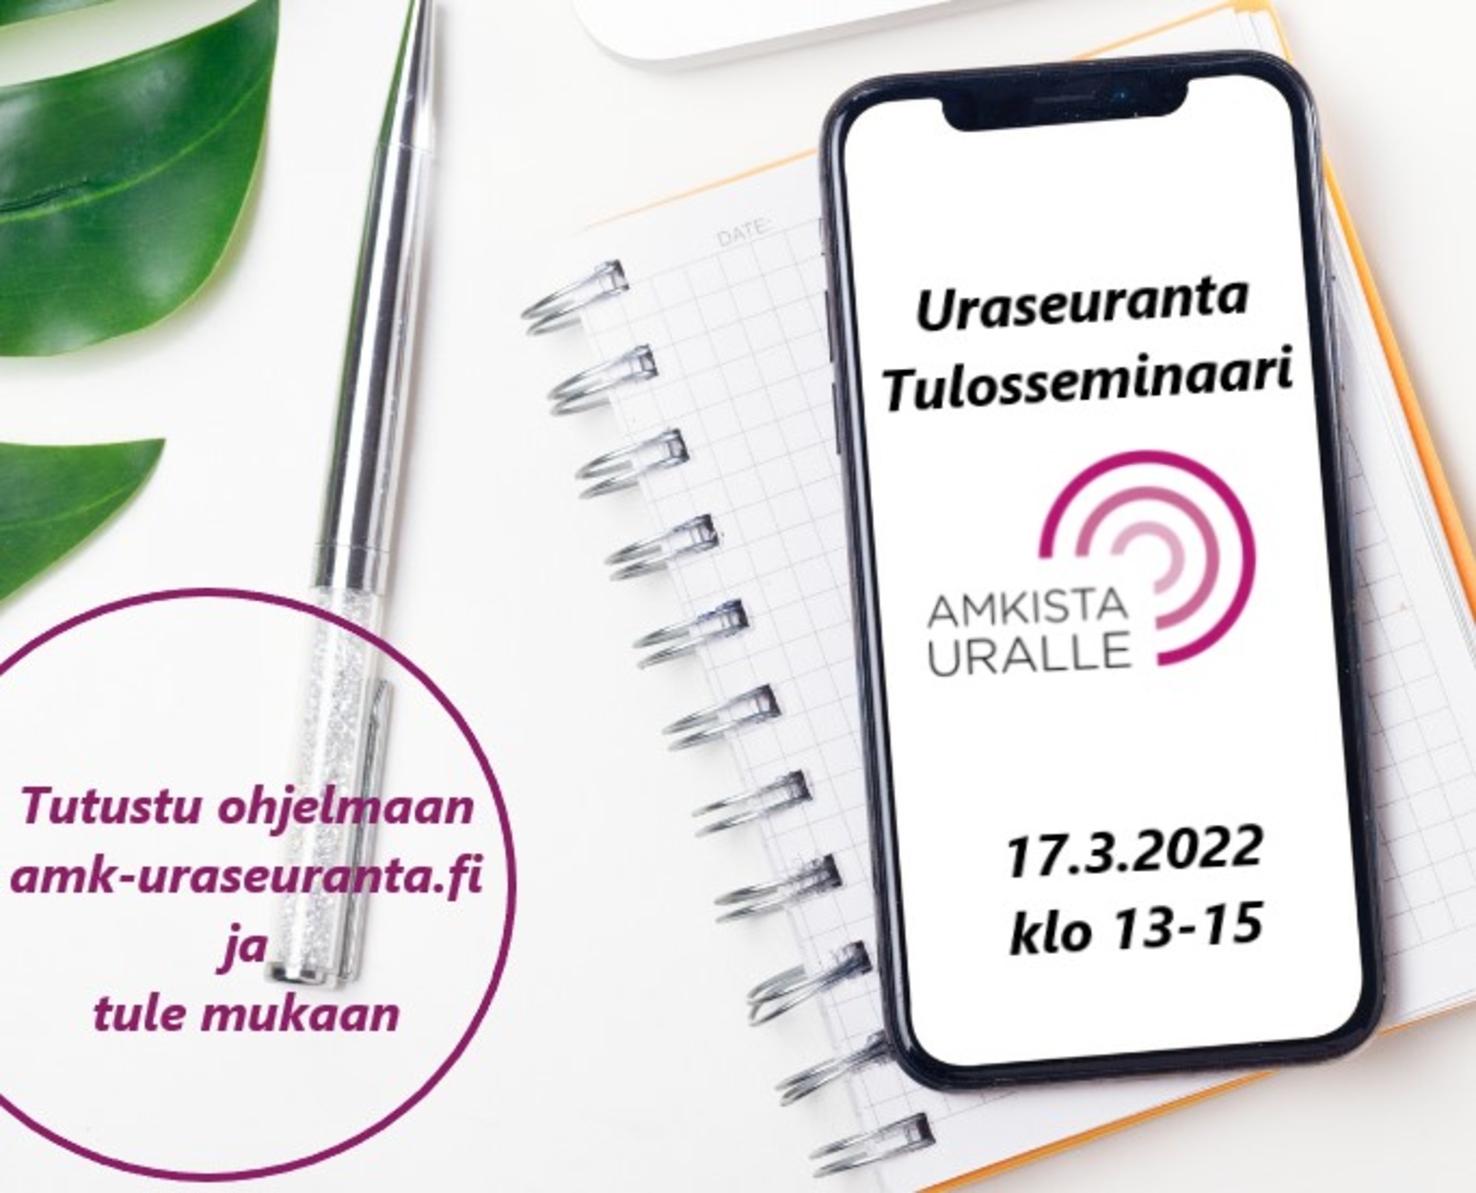 AMKista uralle -tulosseminaari uraseurantakyselyn 2021 tuloksista - Laurea -ammattikorkeakoulu